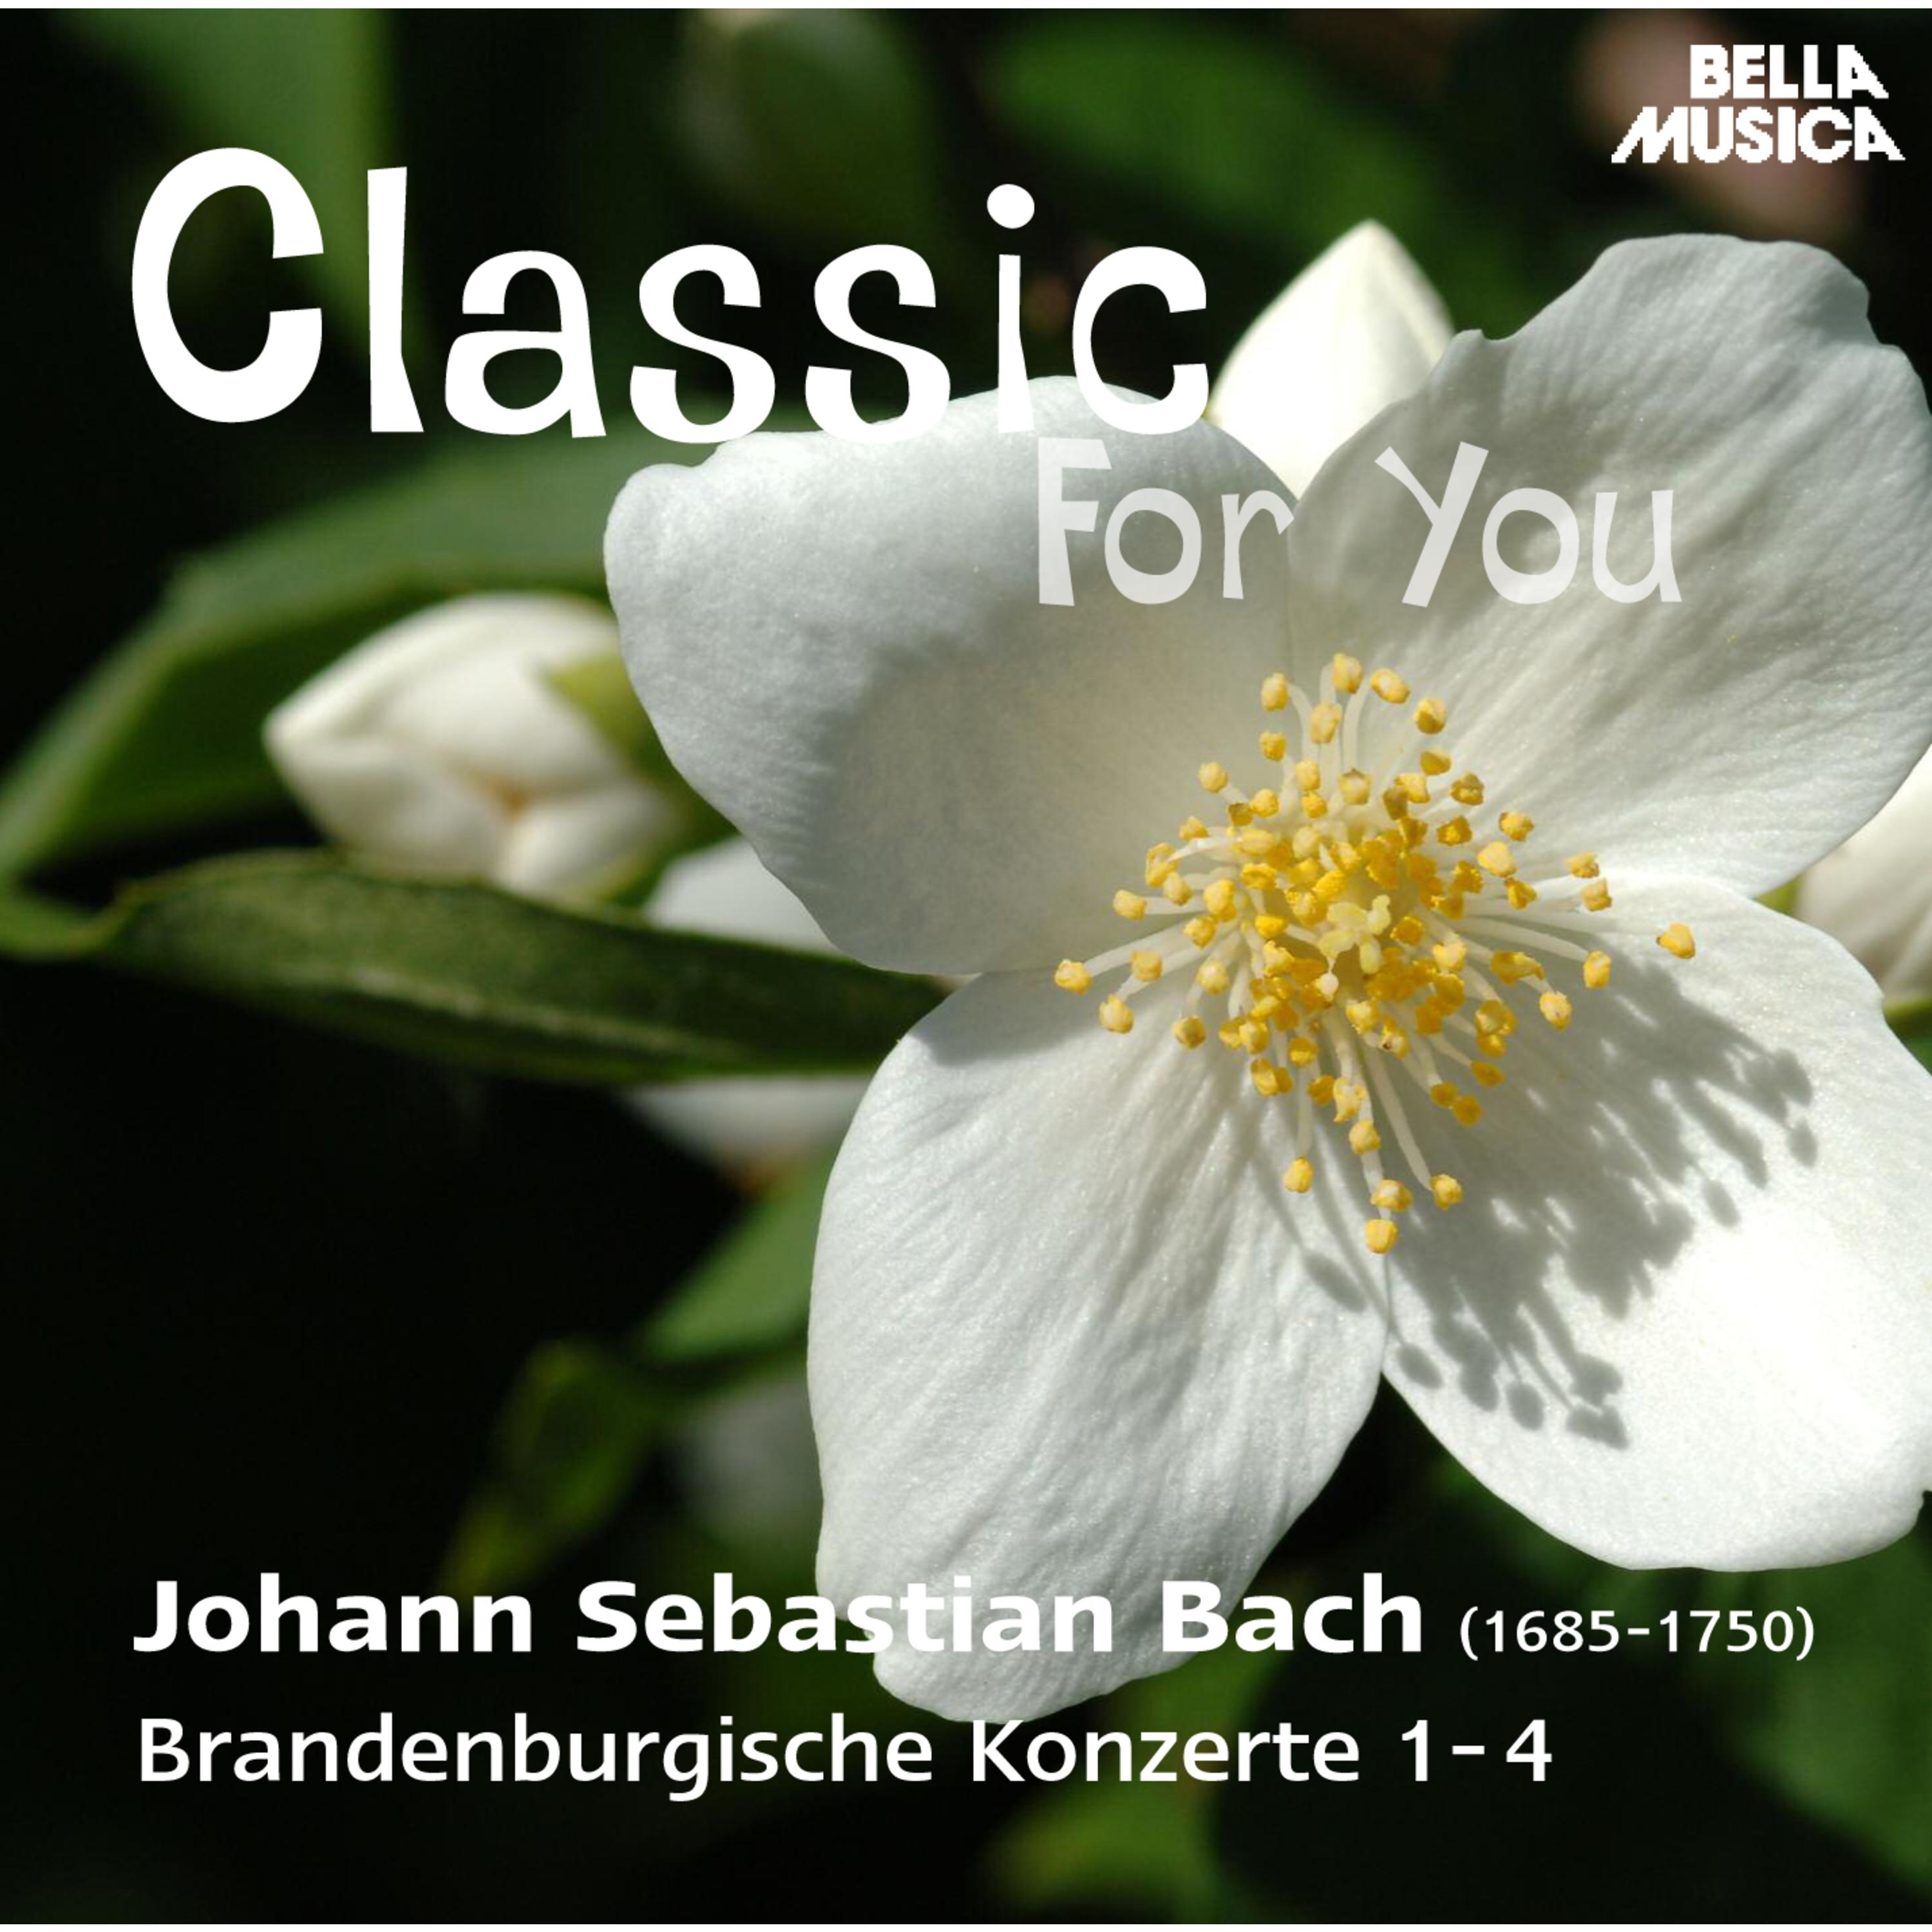 Brandenburgisches Konzert in G Major, BWV 1049, No. 4: I. Allegro